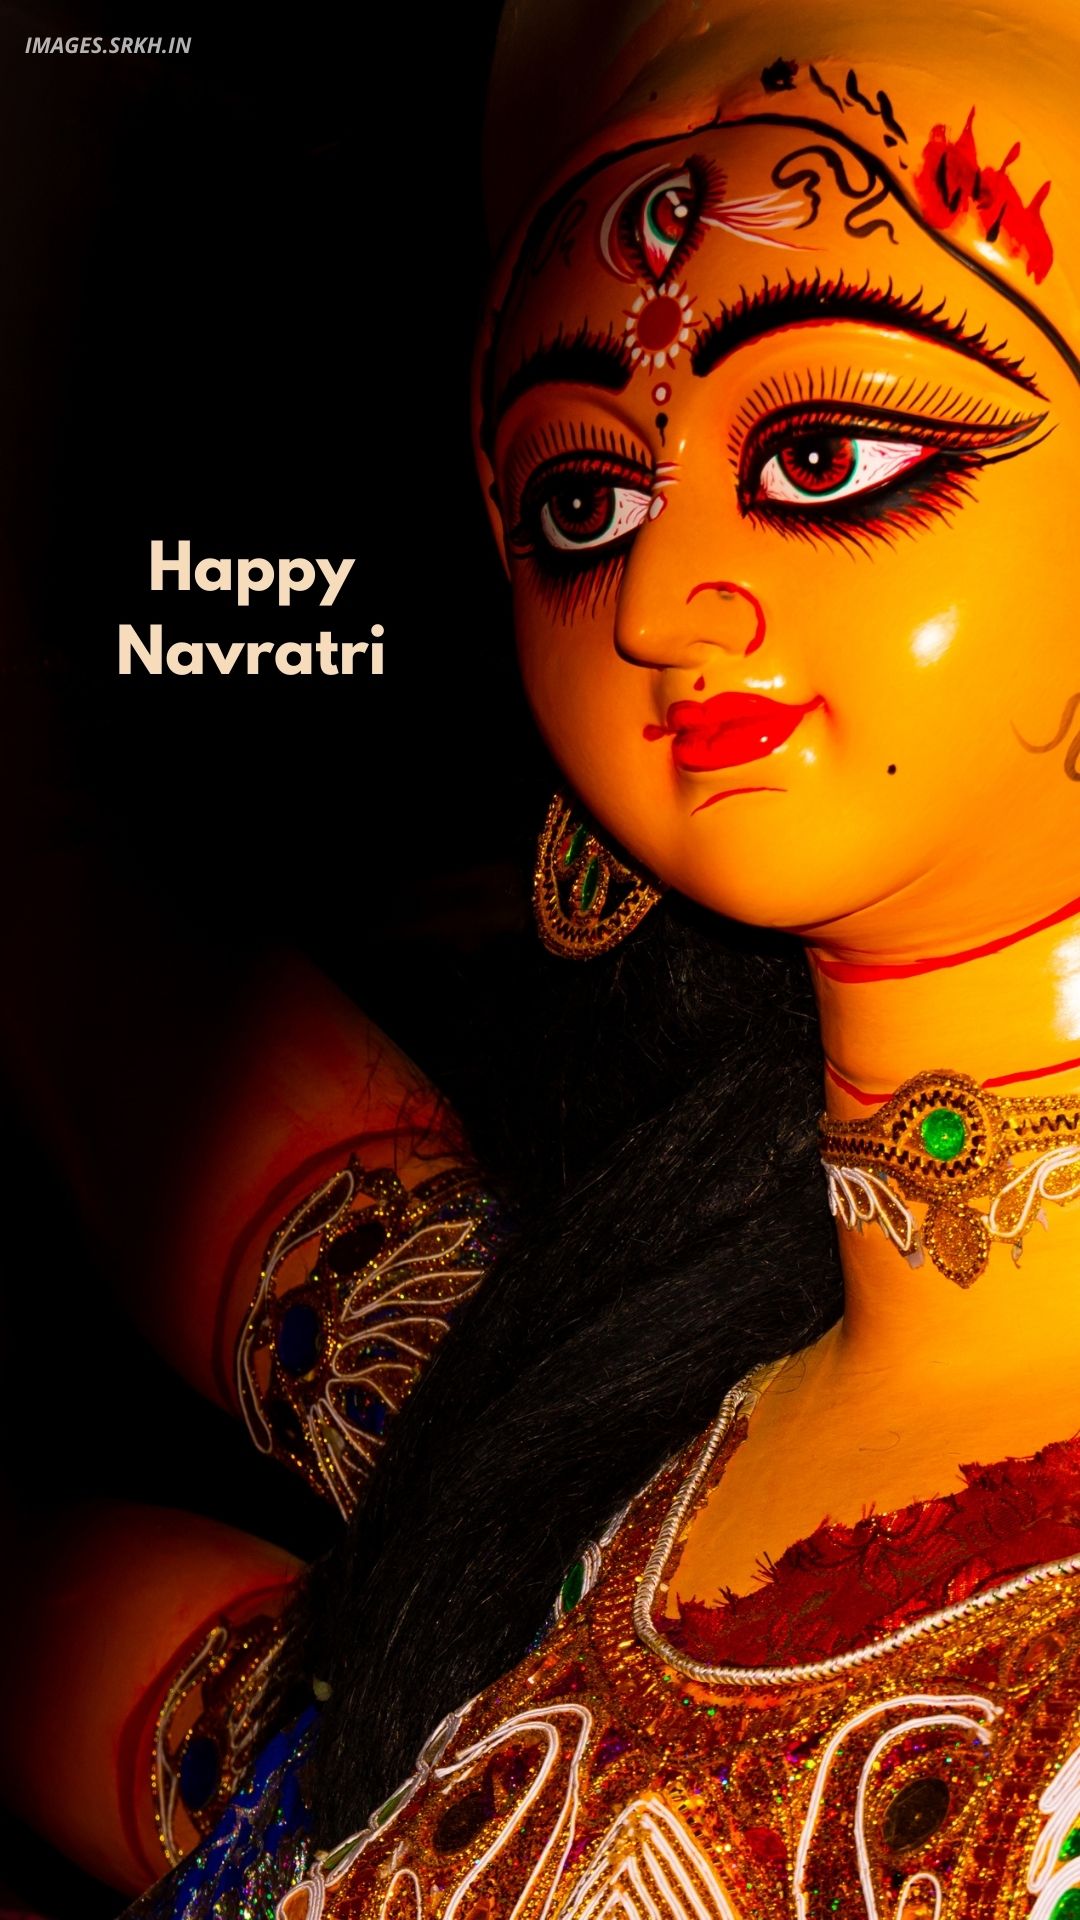 🔥 Navratri Background Image Download free - Images SRkh